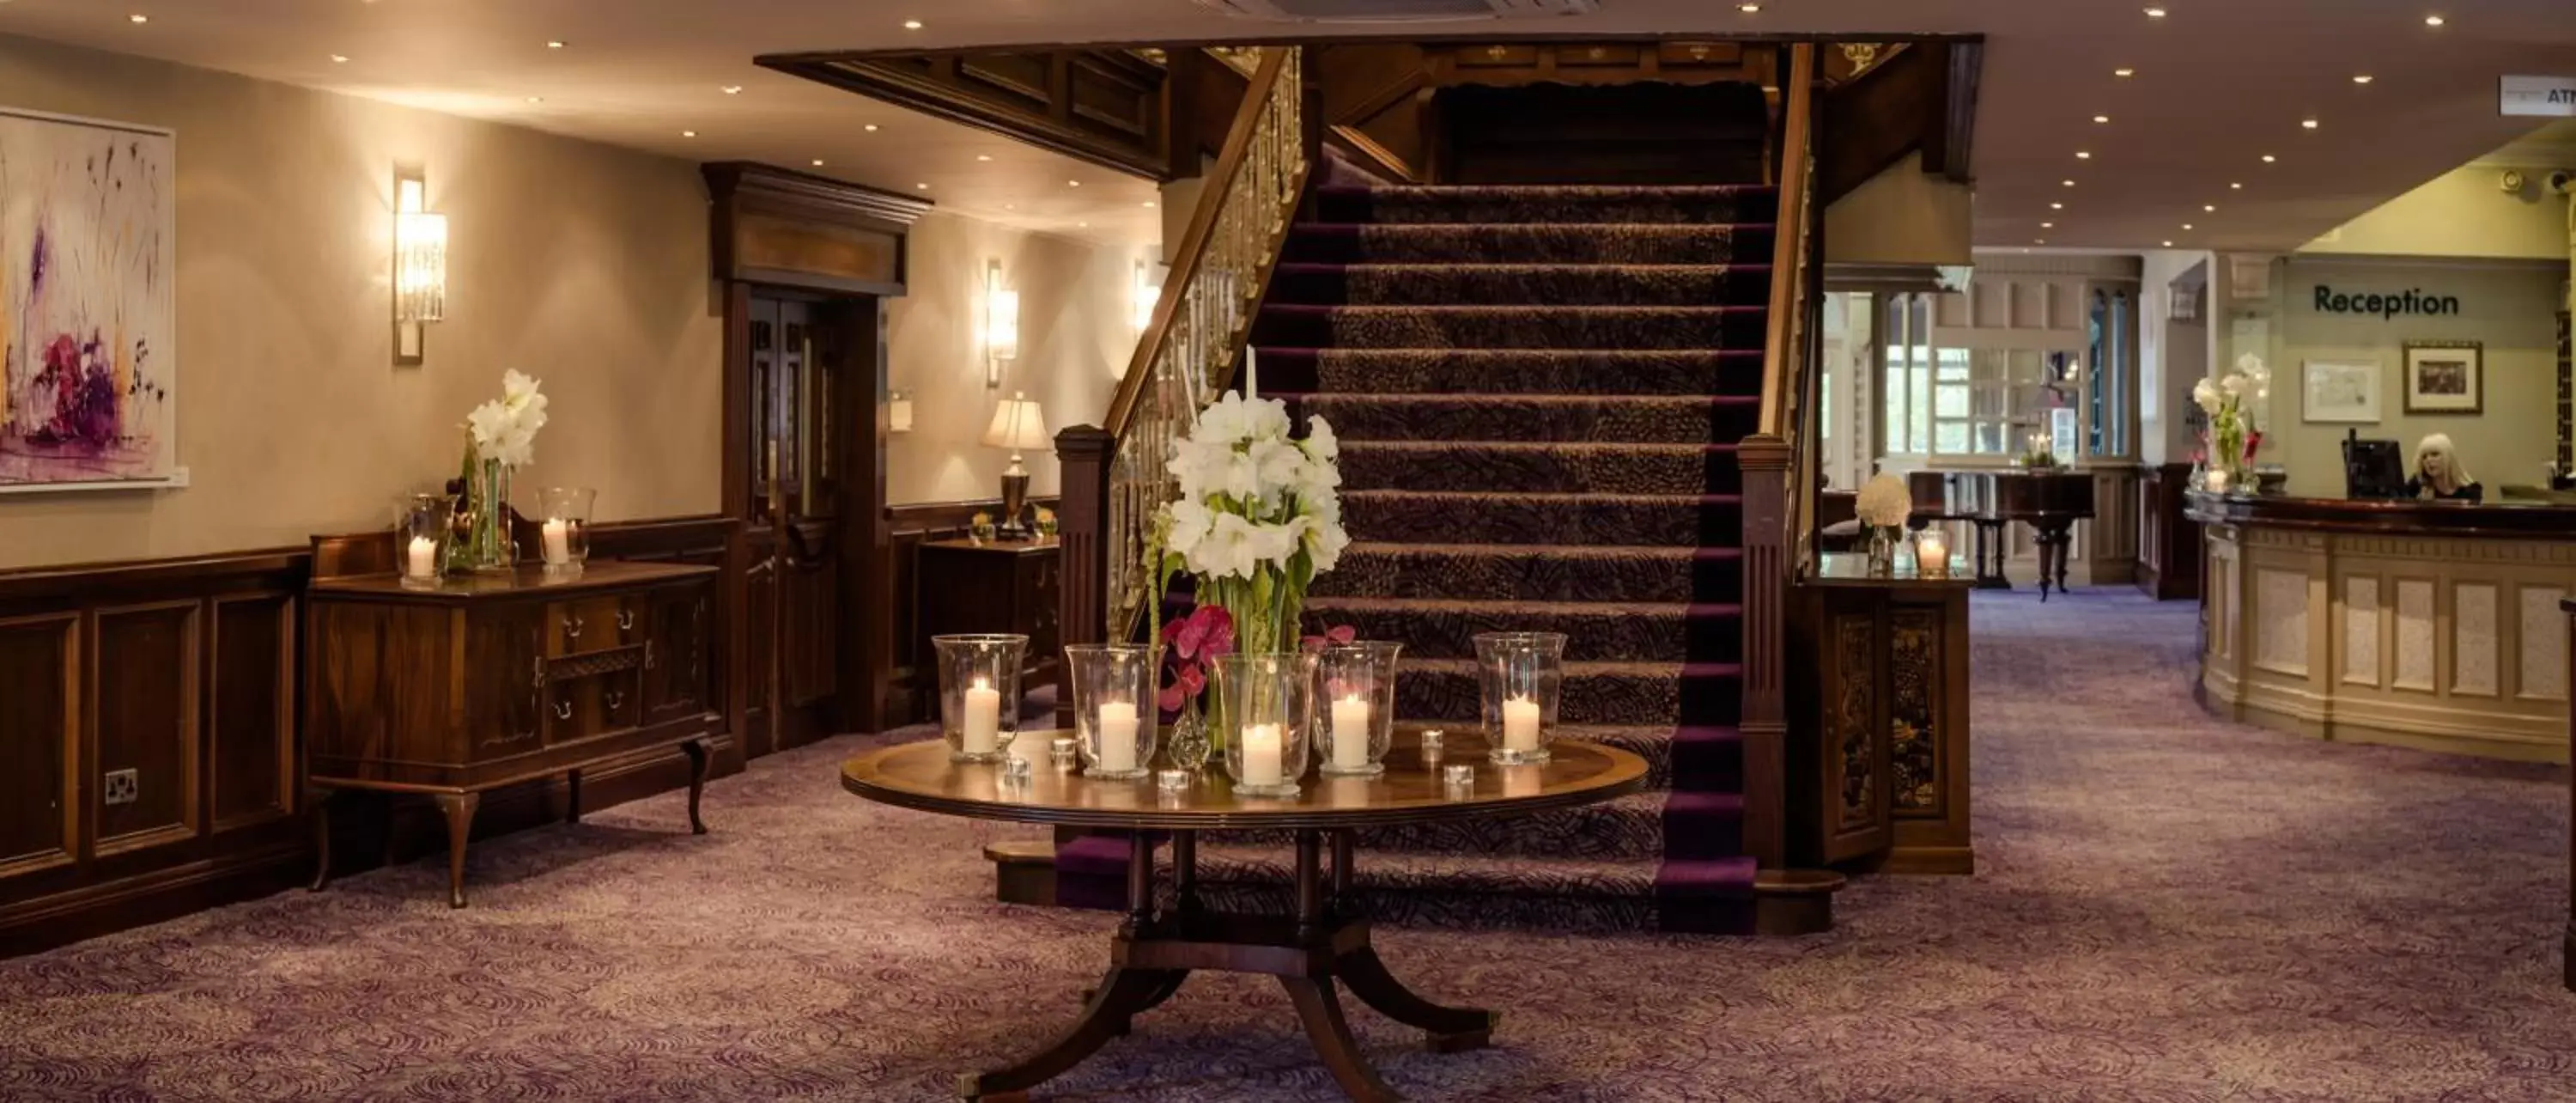 Lobby or reception in Woodford Dolmen Hotel Carlow